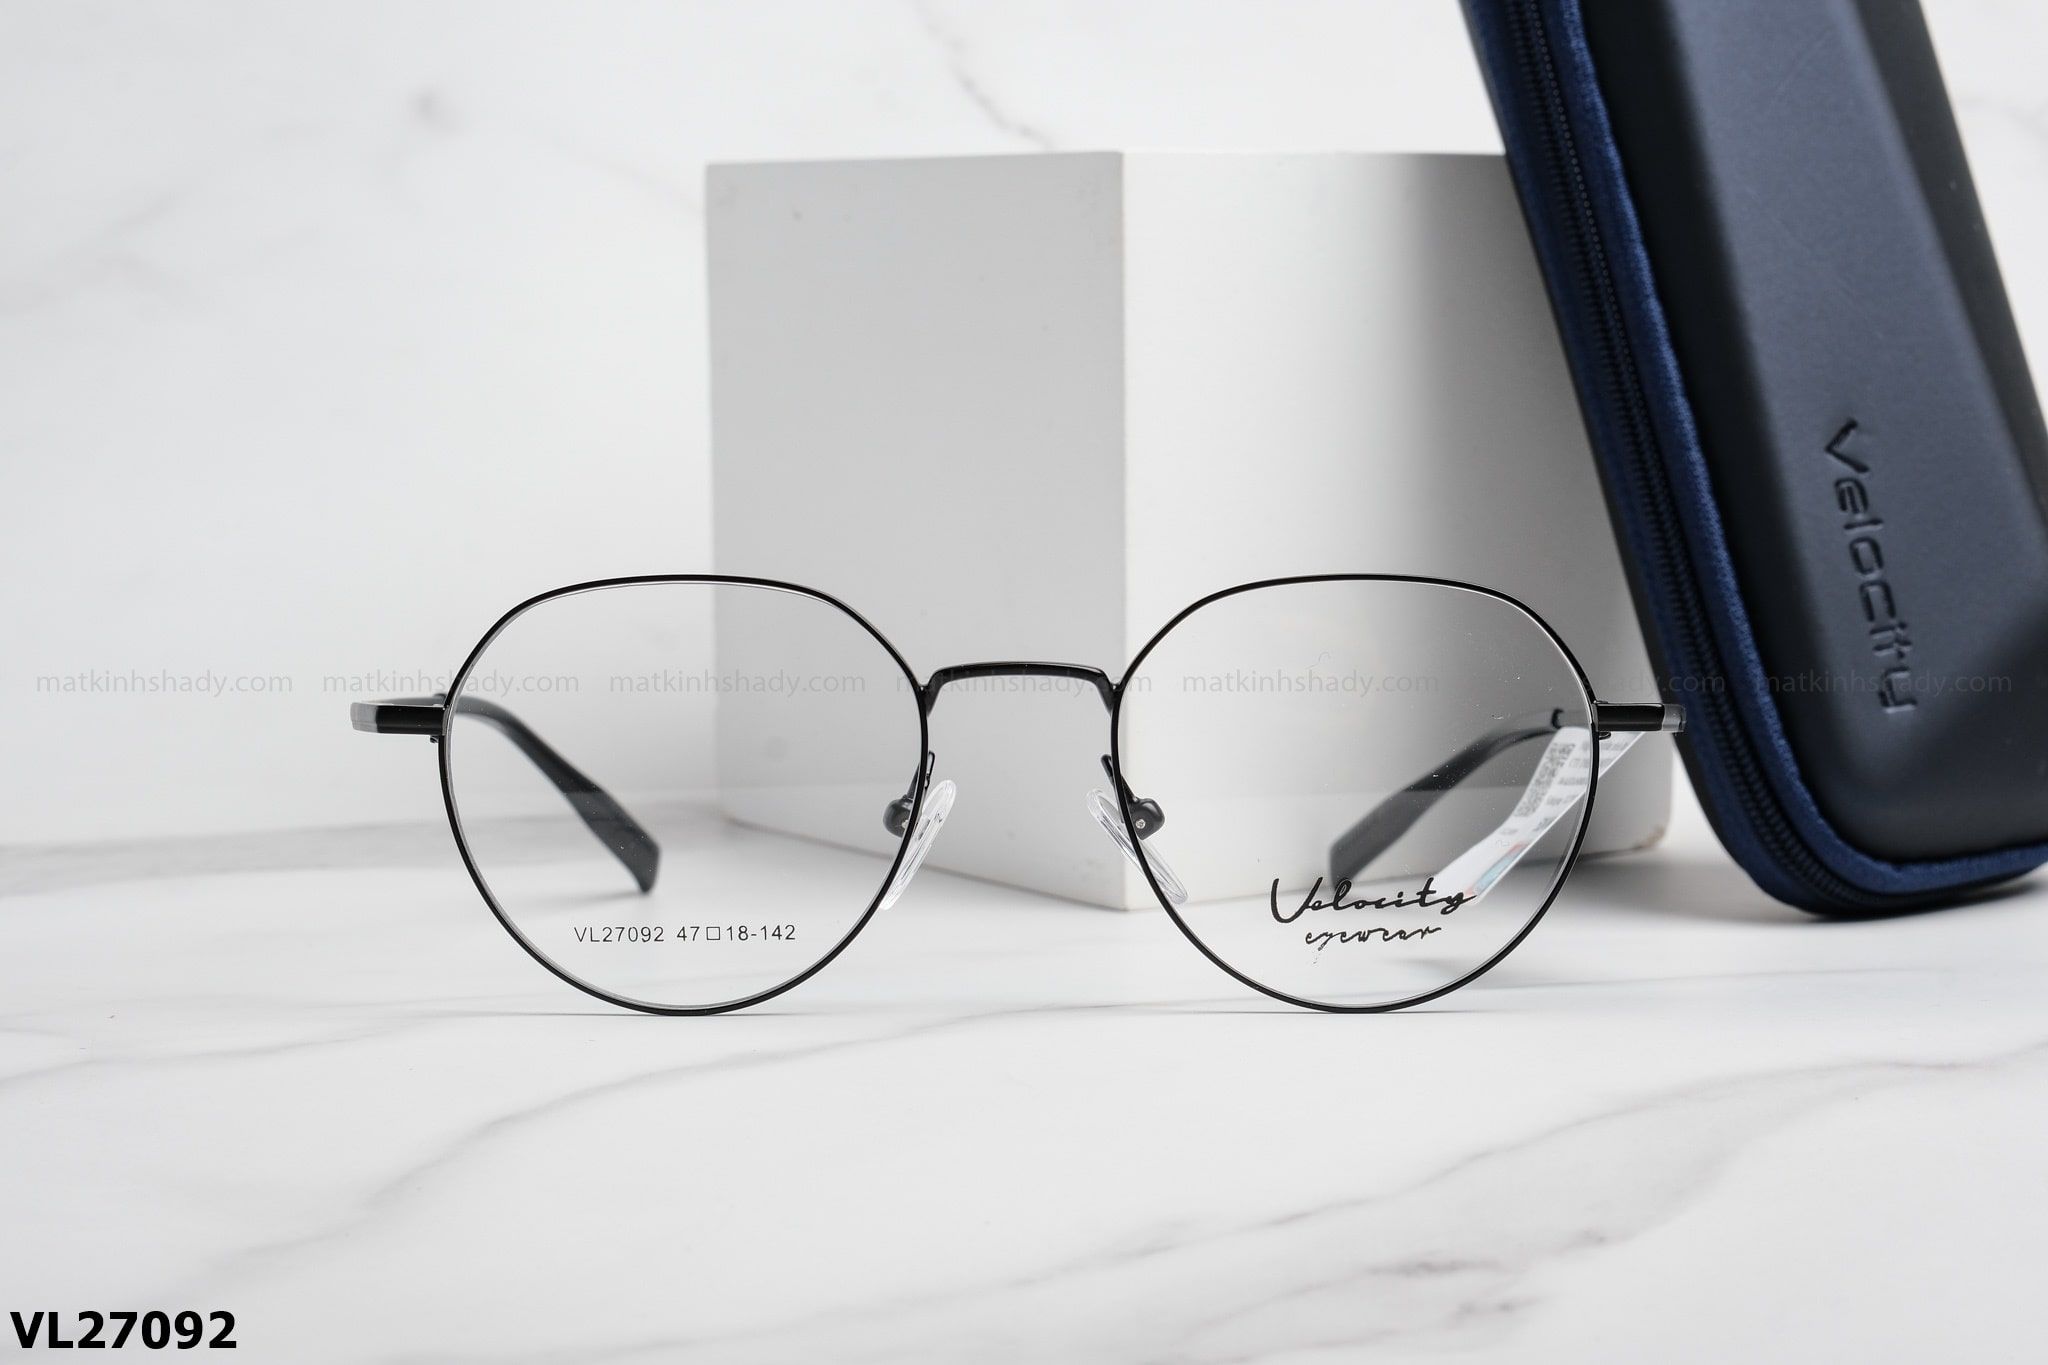  Velocity Eyewear - Glasses - VL27092 